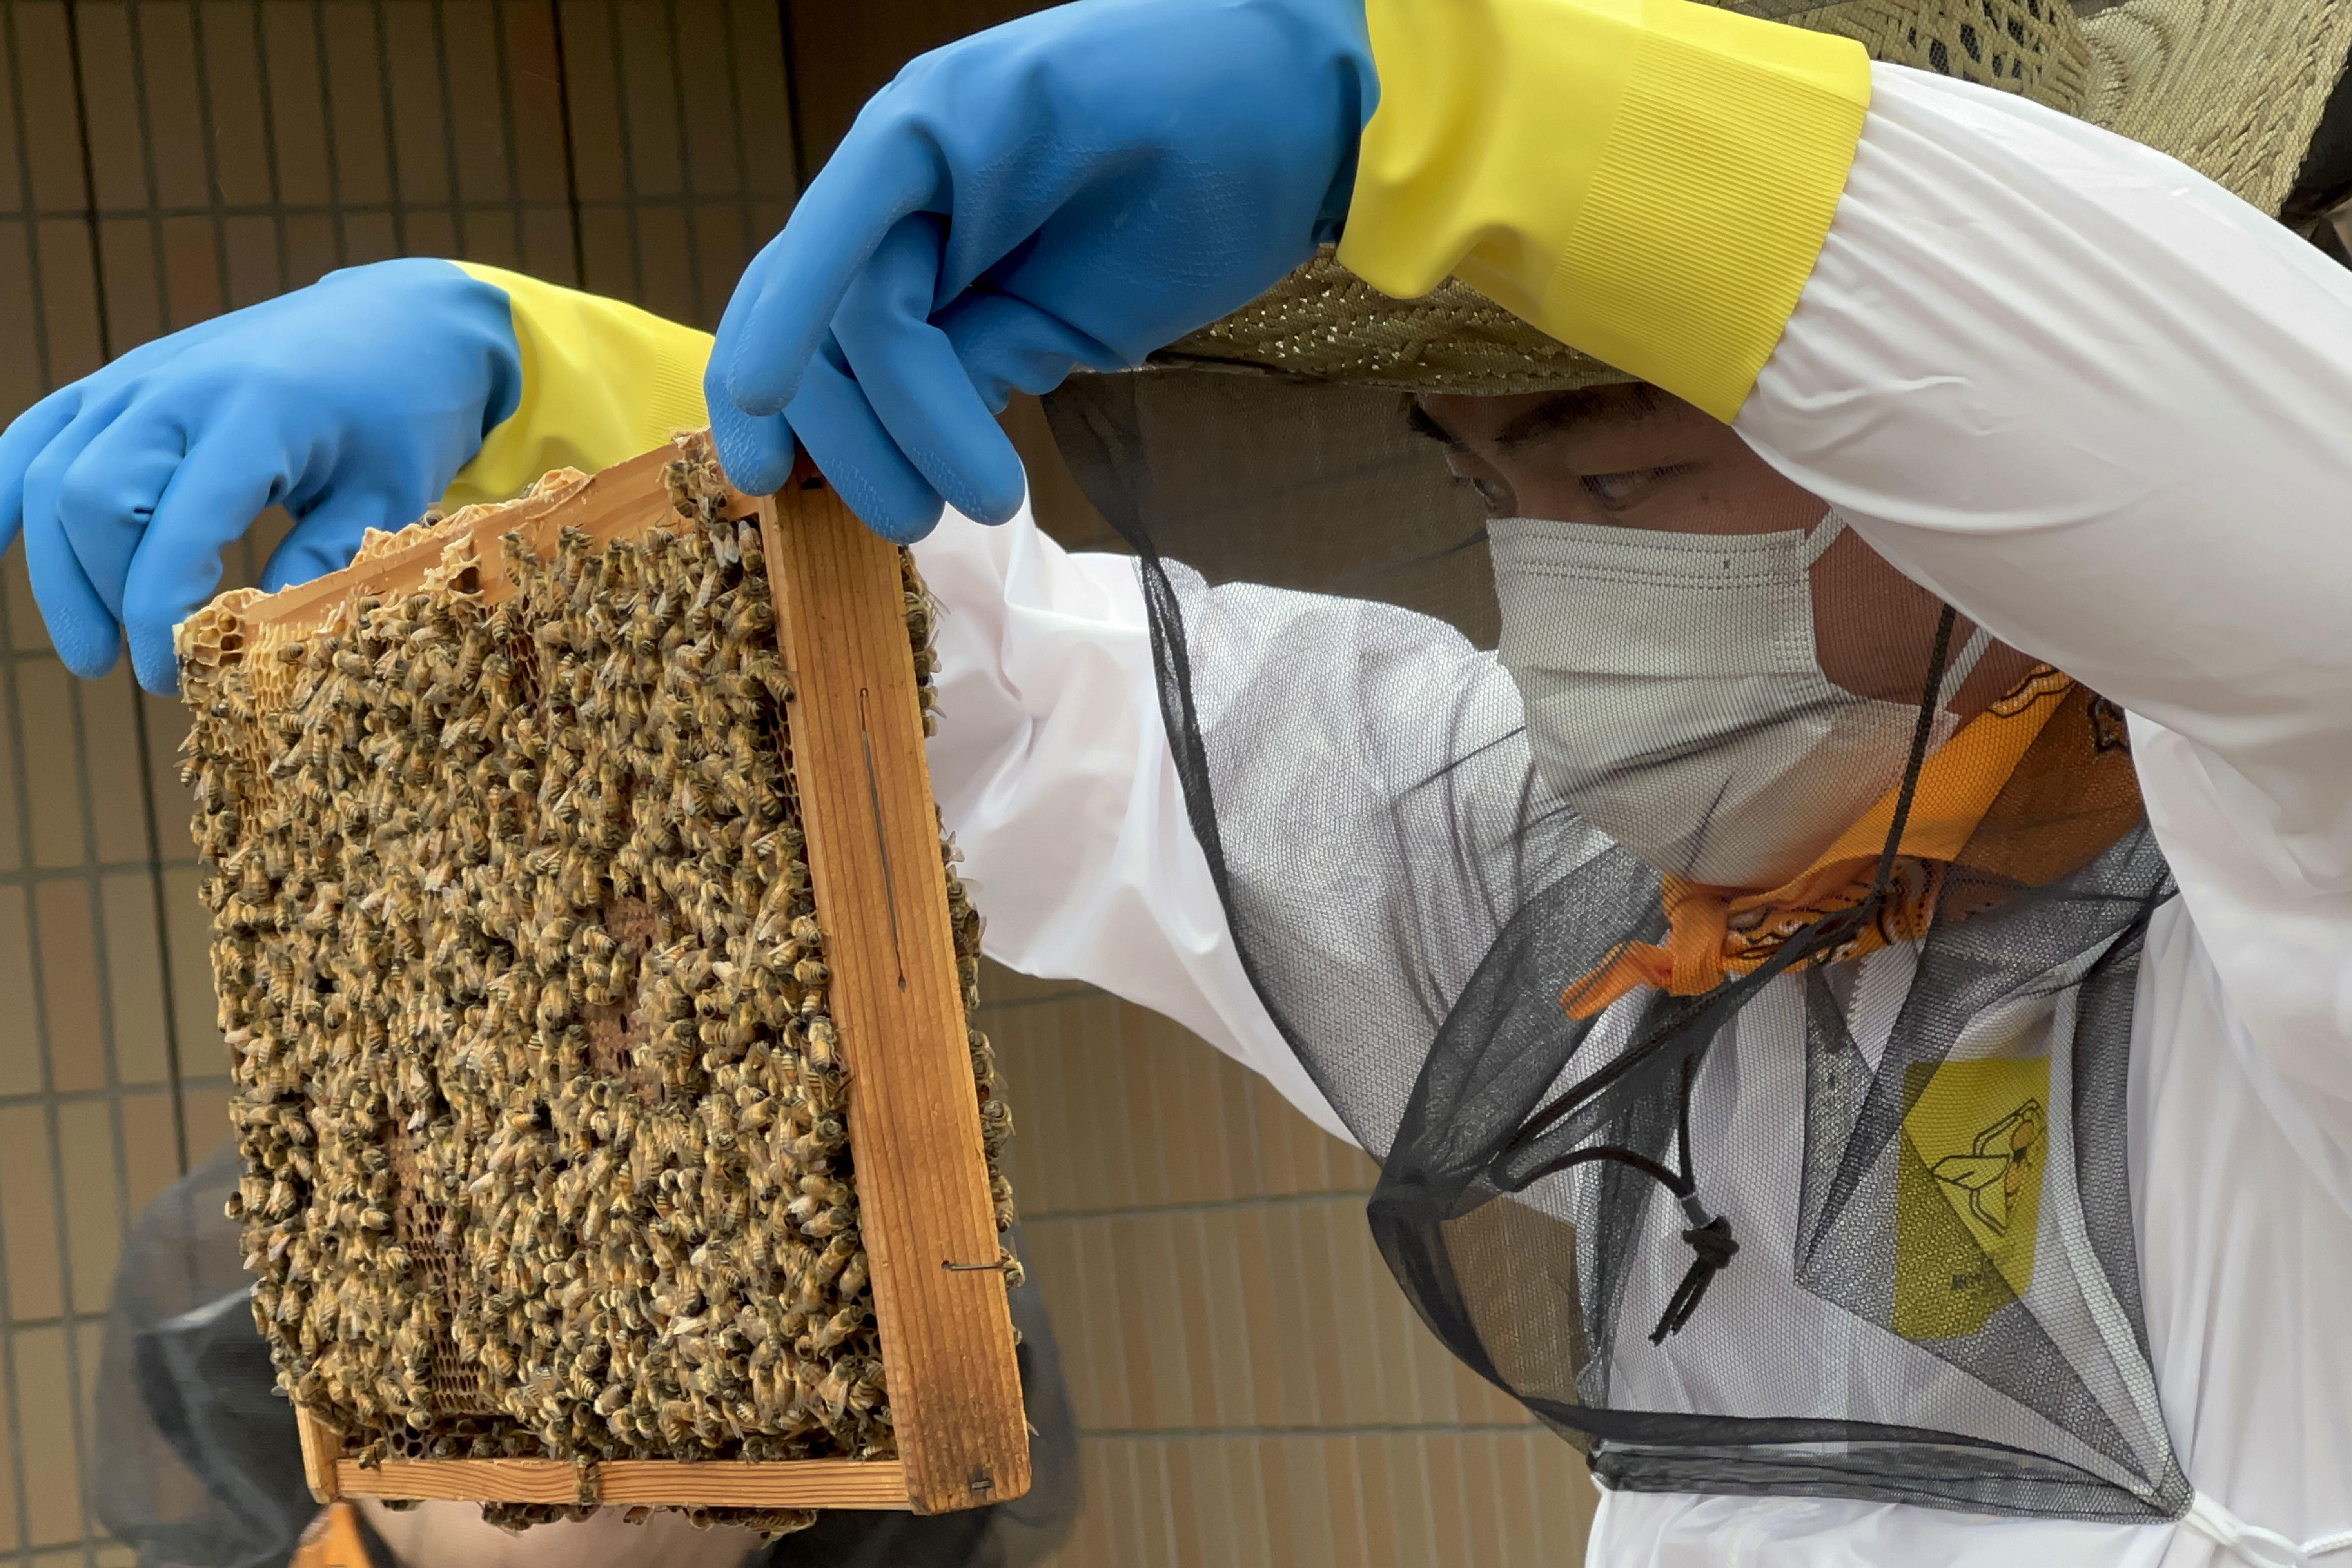 明海大学学生による都市型養蜂「うらやすハニープロジェクト」、放蜂式でミツバチを浦安の空へ